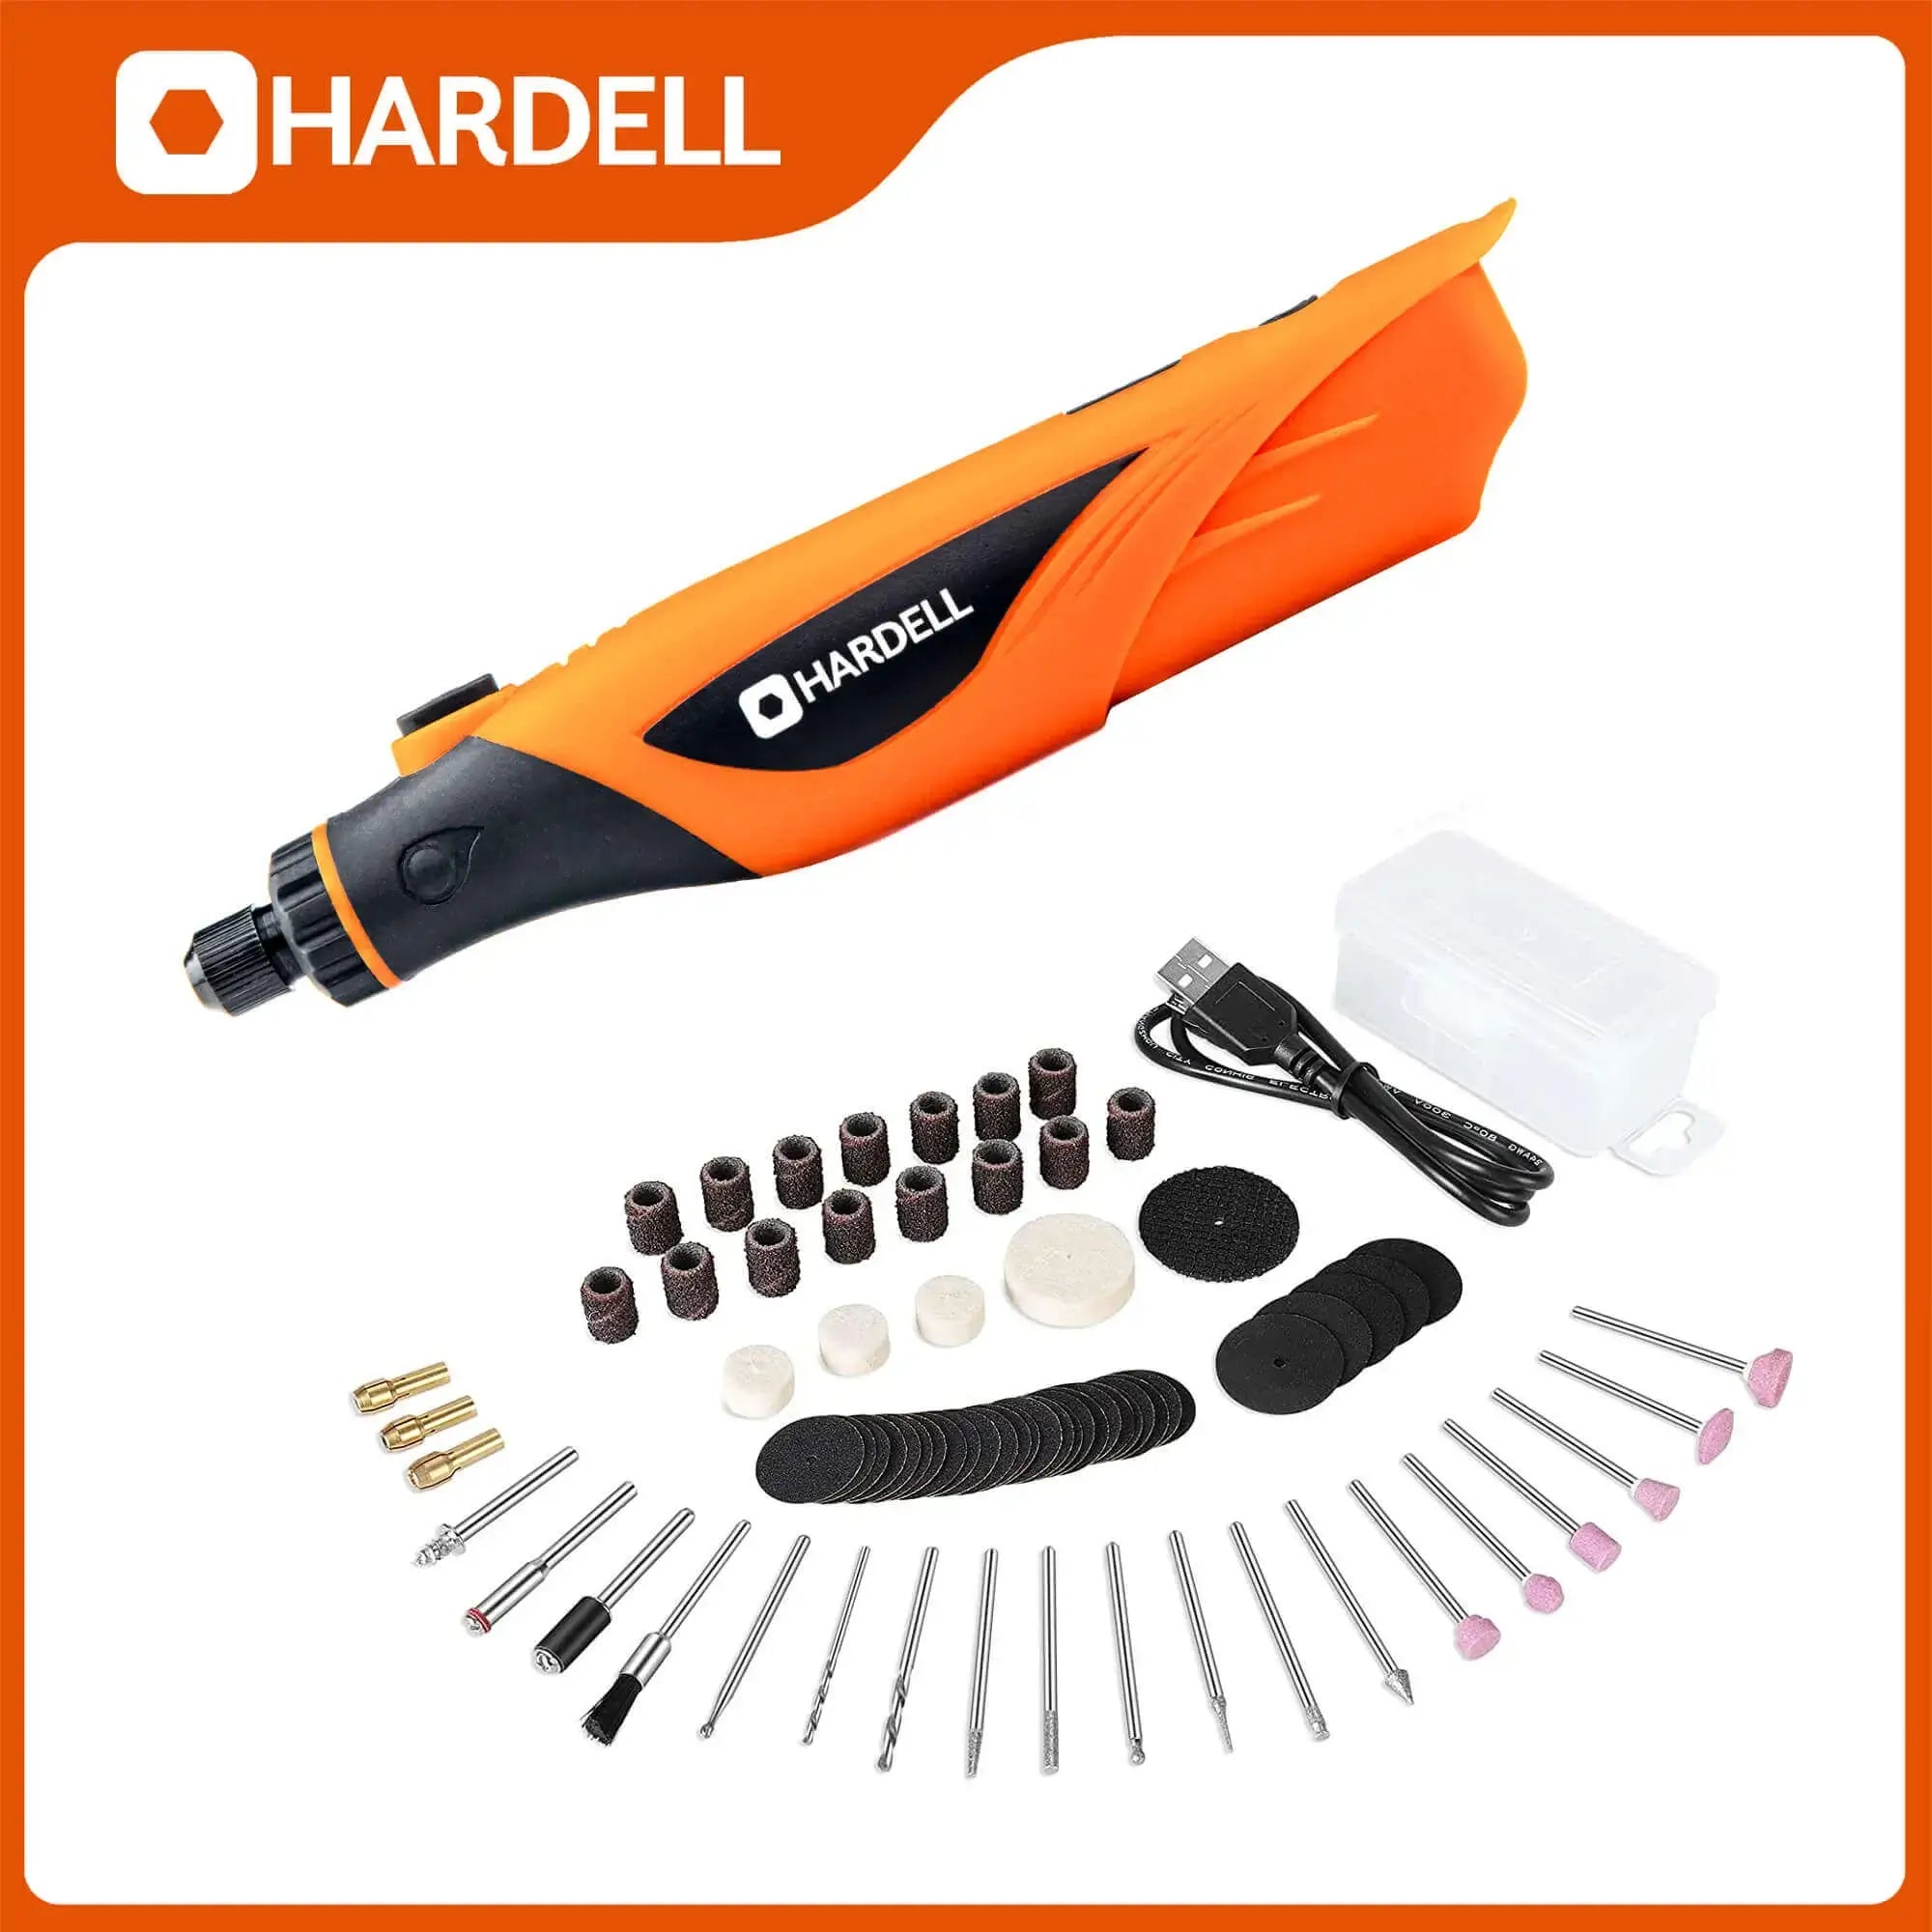 Hardell_2250_4V_Mini_Cordless_Rotary_Tool_02